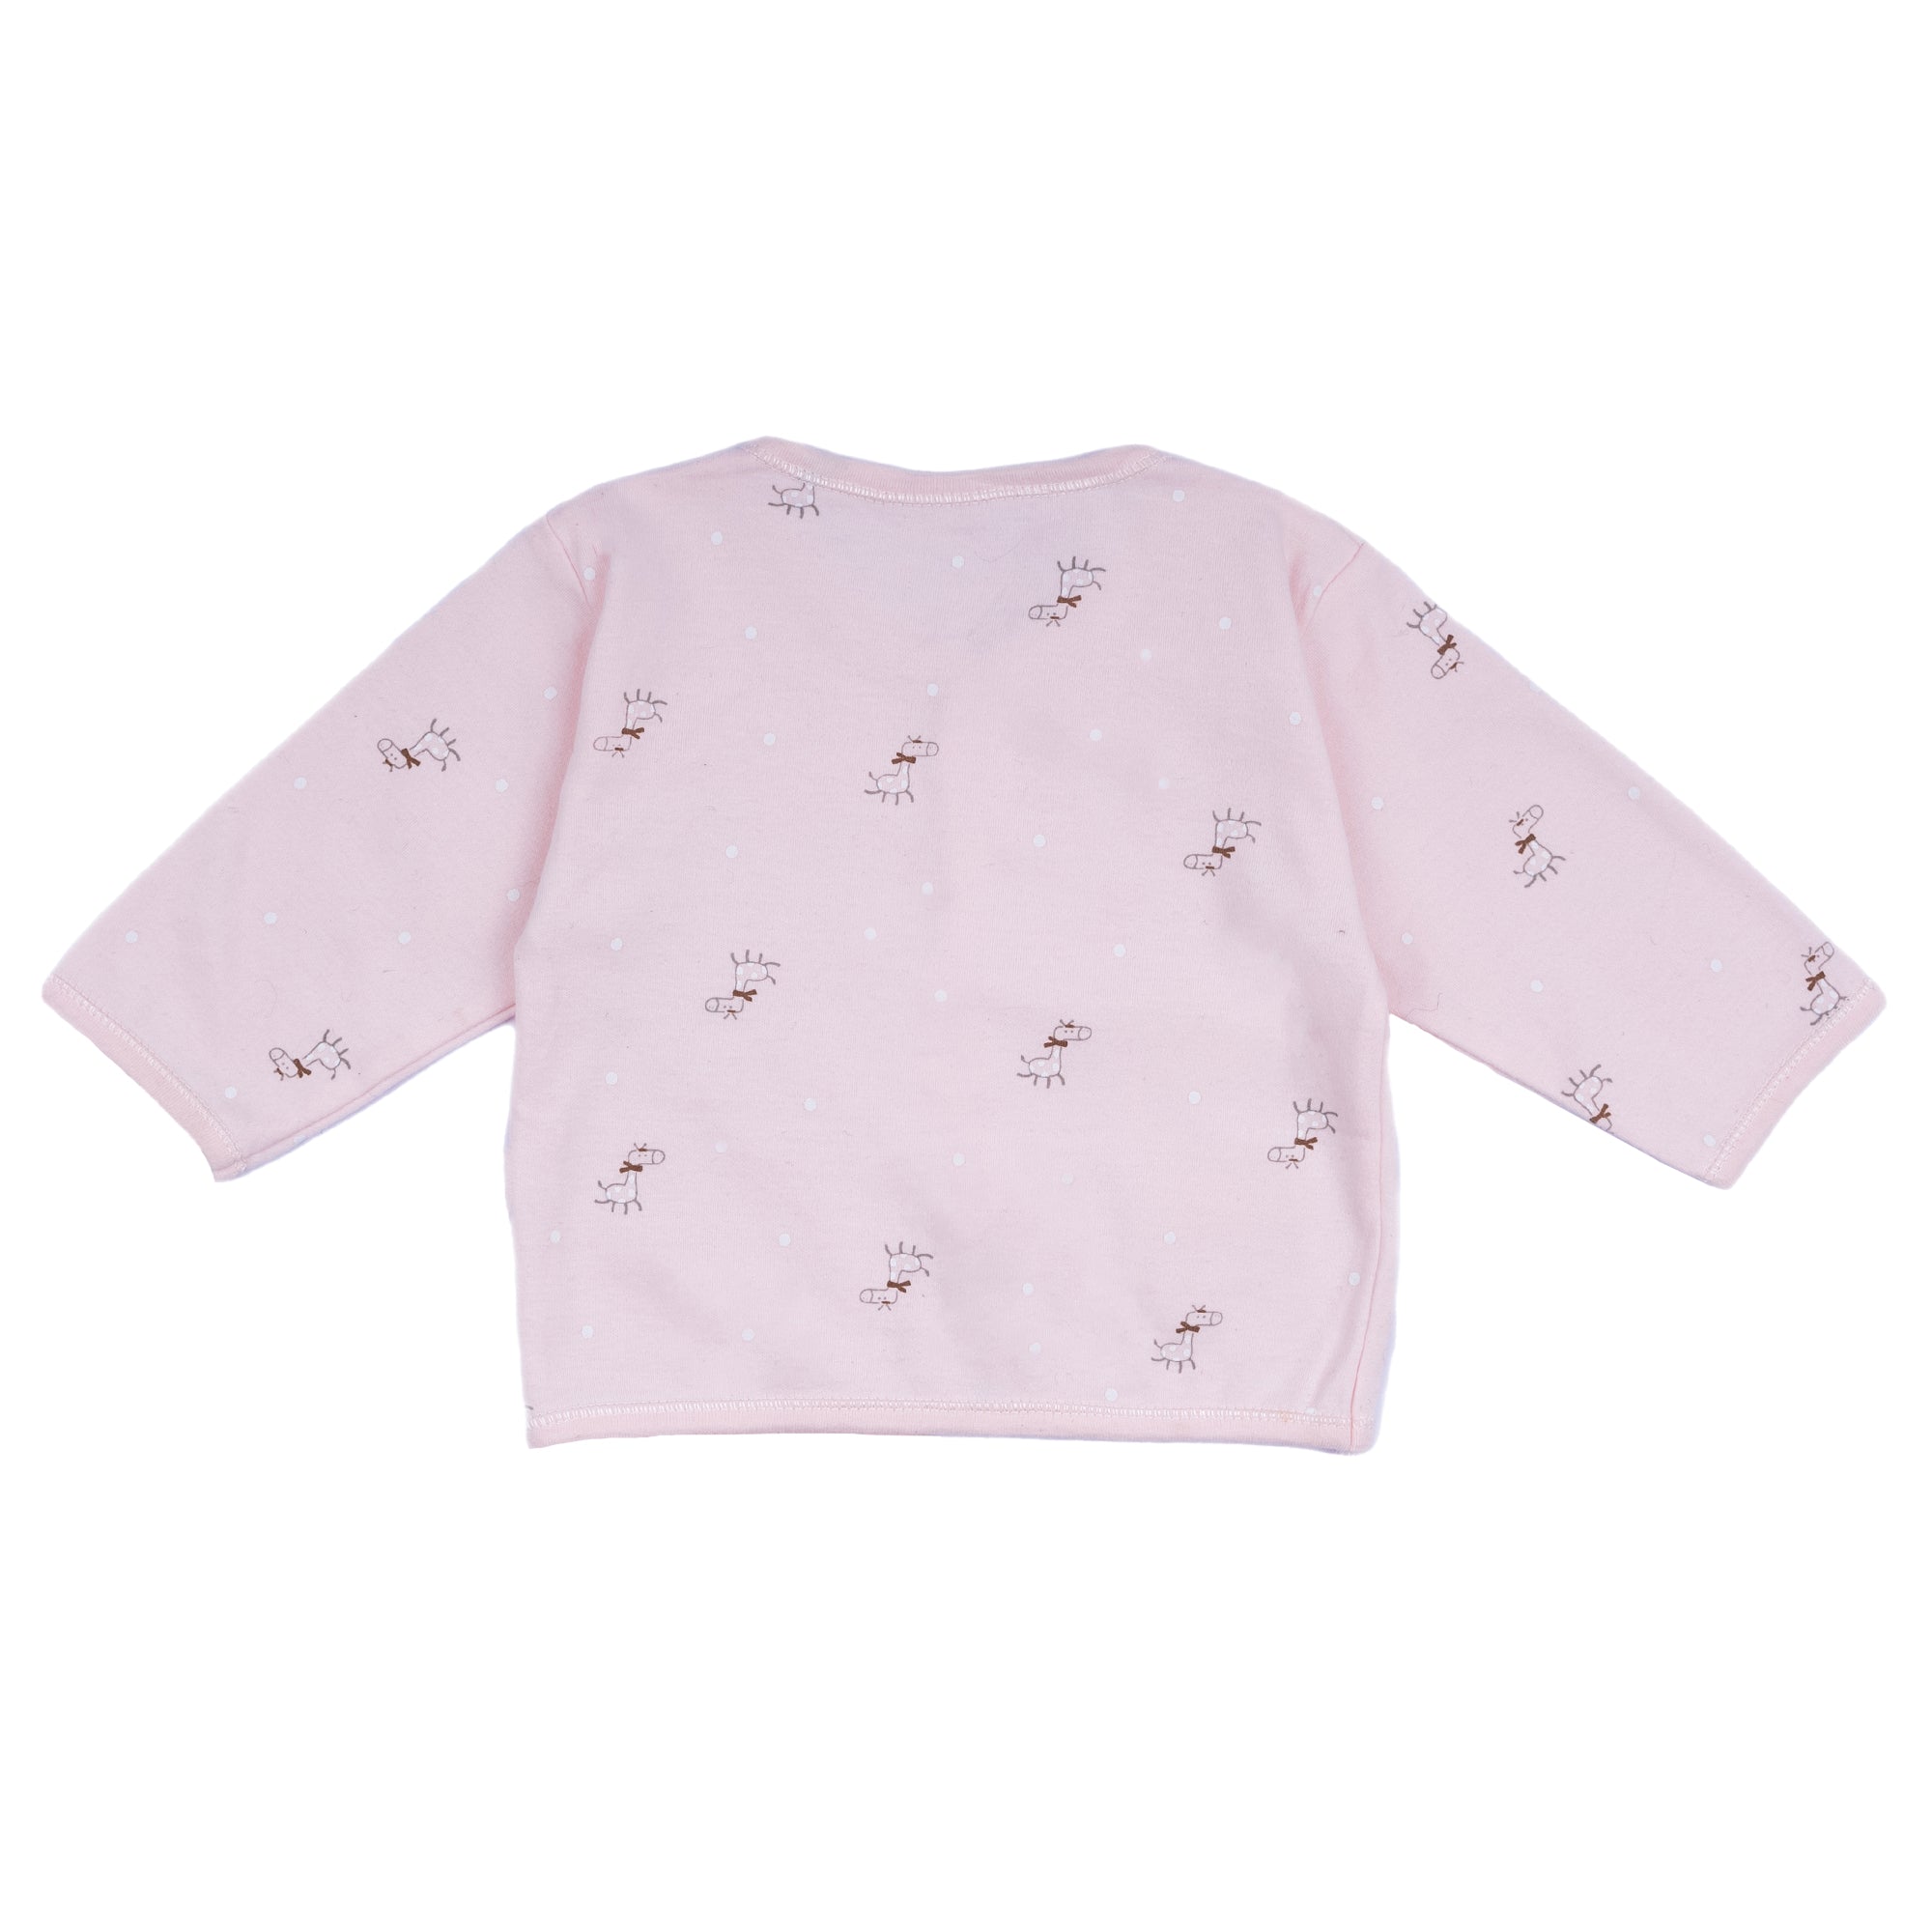 Baby Moo Giraffe Print Cap Bib Pyjamas 5 Pcs Clothing Gift Set - Pink